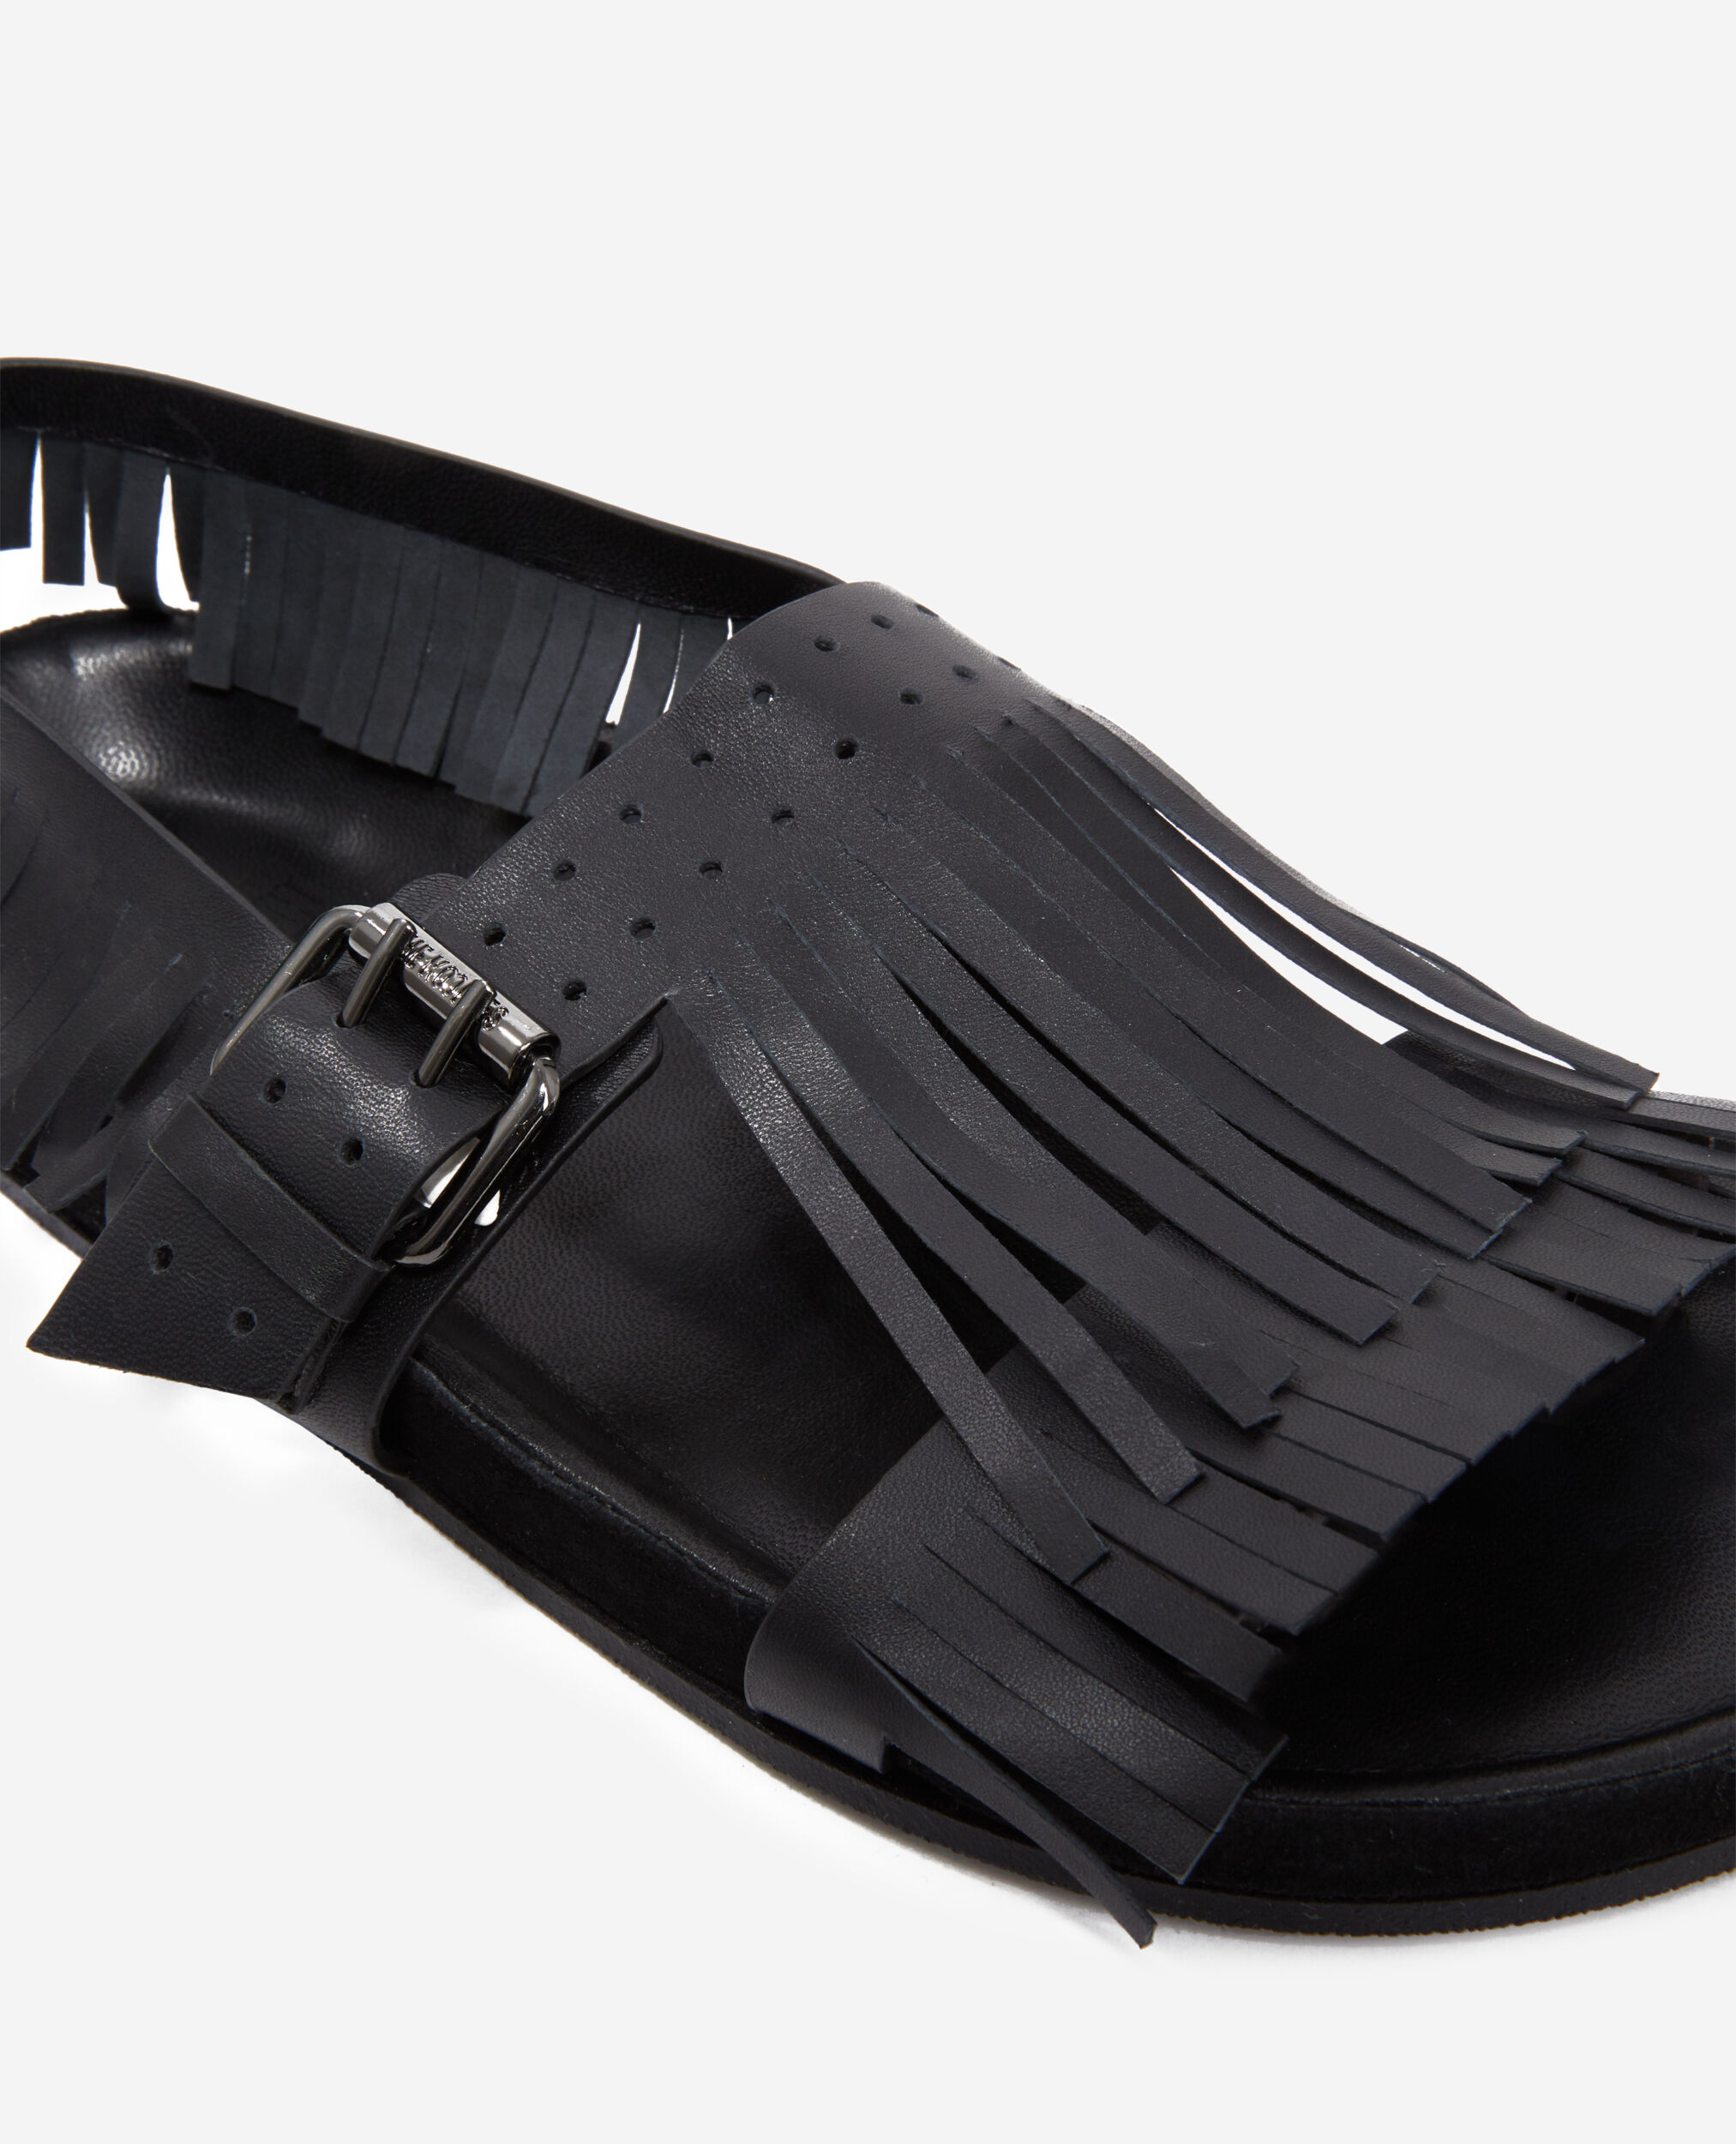 Black leather sandals with fringes, BLACK, hi-res image number null